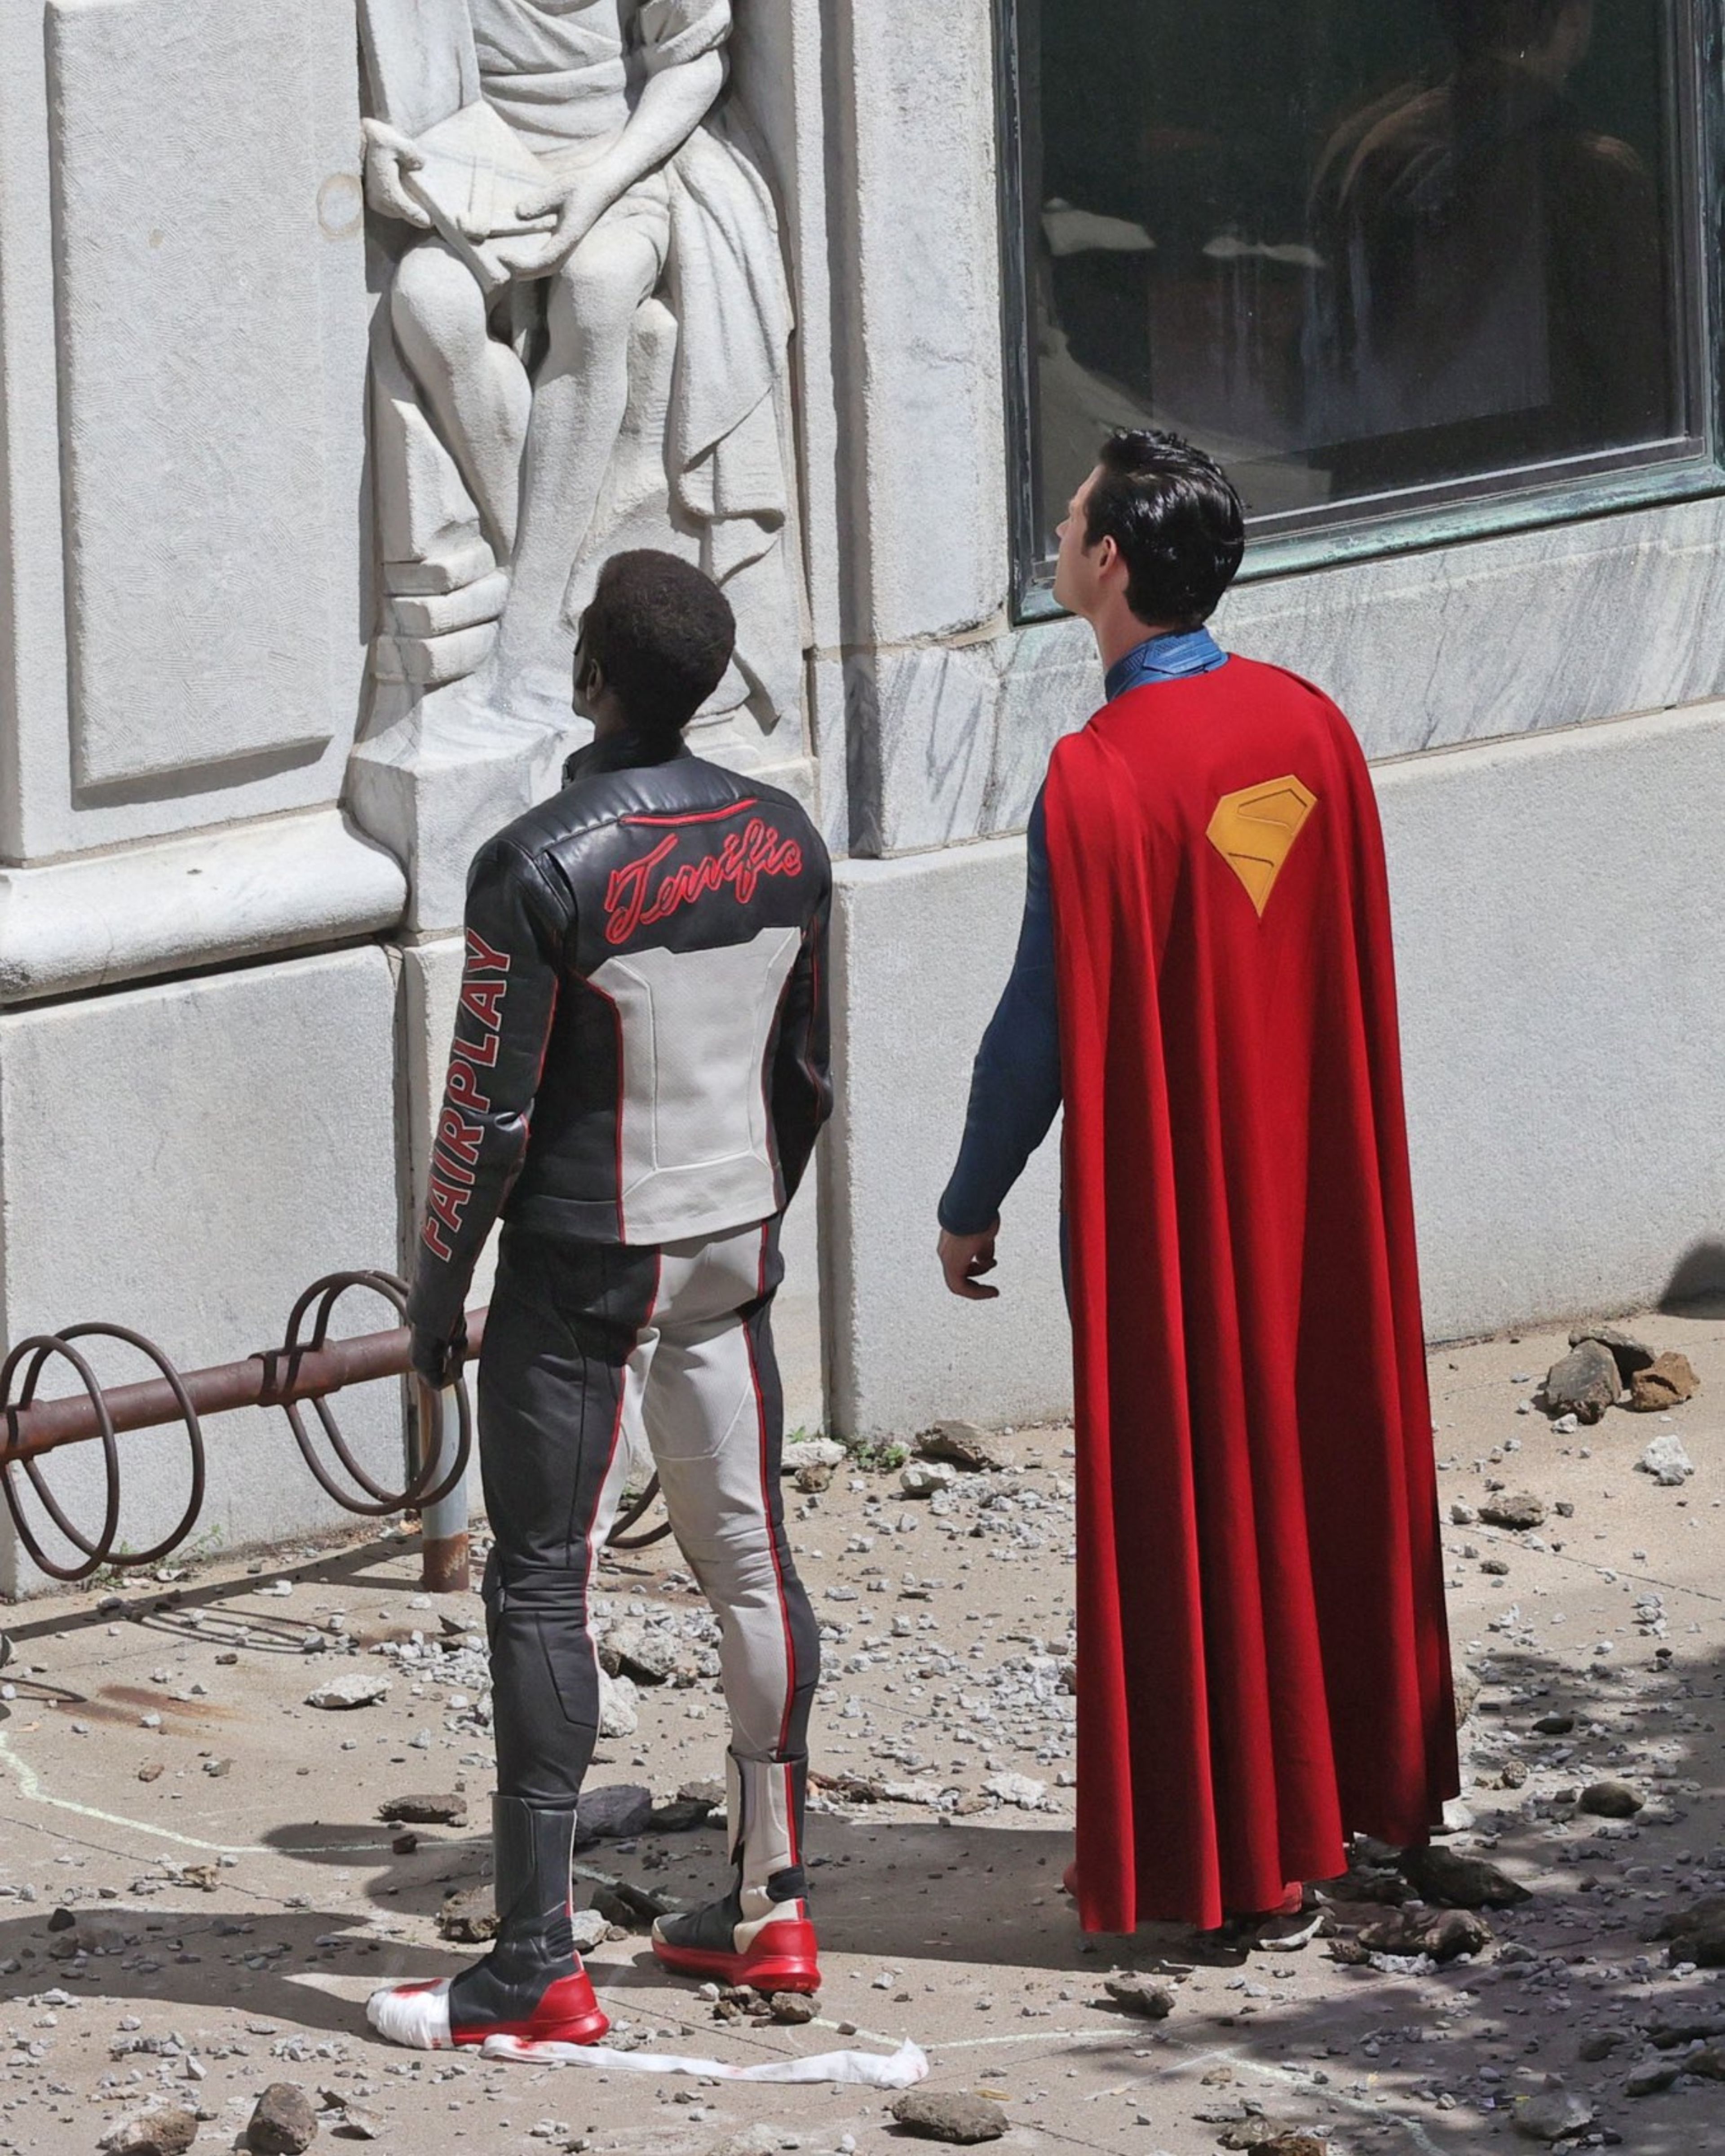 Superman traje